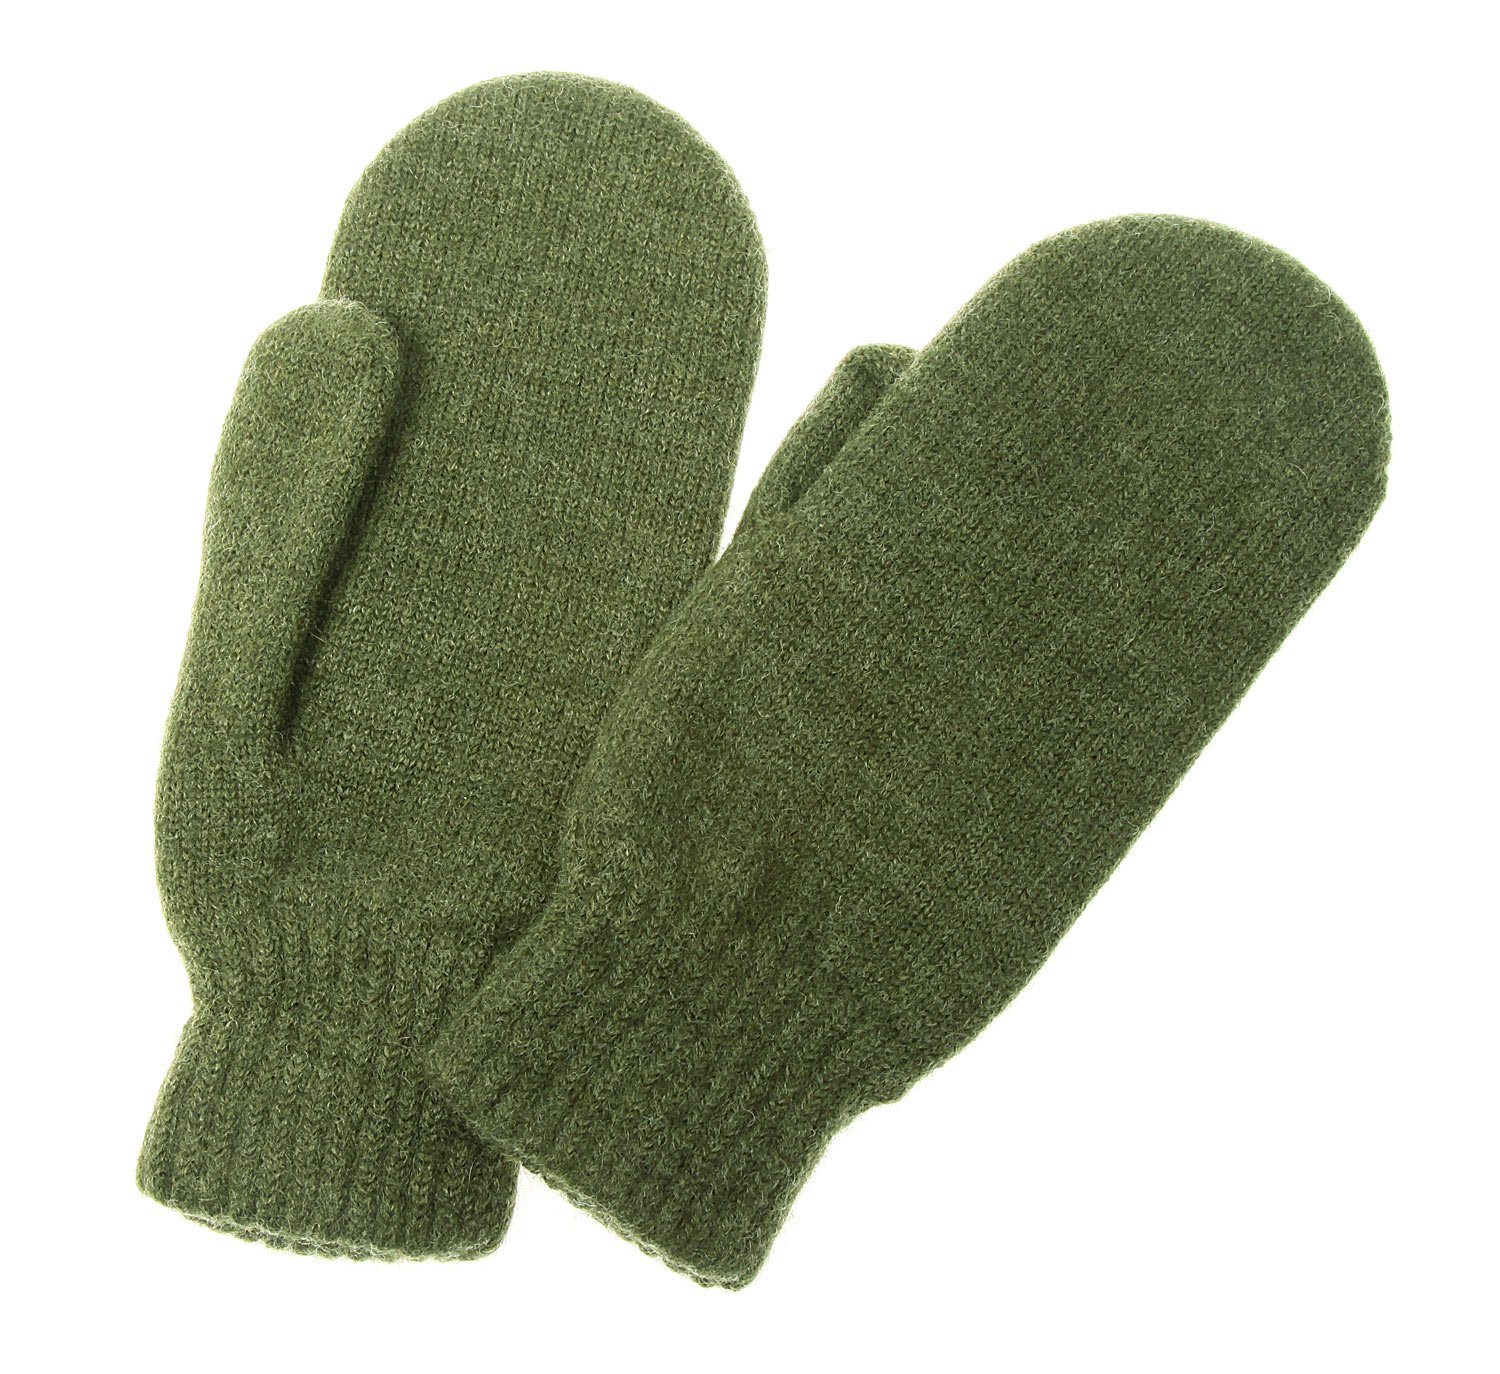 Winterhandschuhe Hubertus Green natürliches Material ohne chemische Behandlung Exquisiv Subzero Handschuhe für Jäger mit gewalkter 100/% Wolle